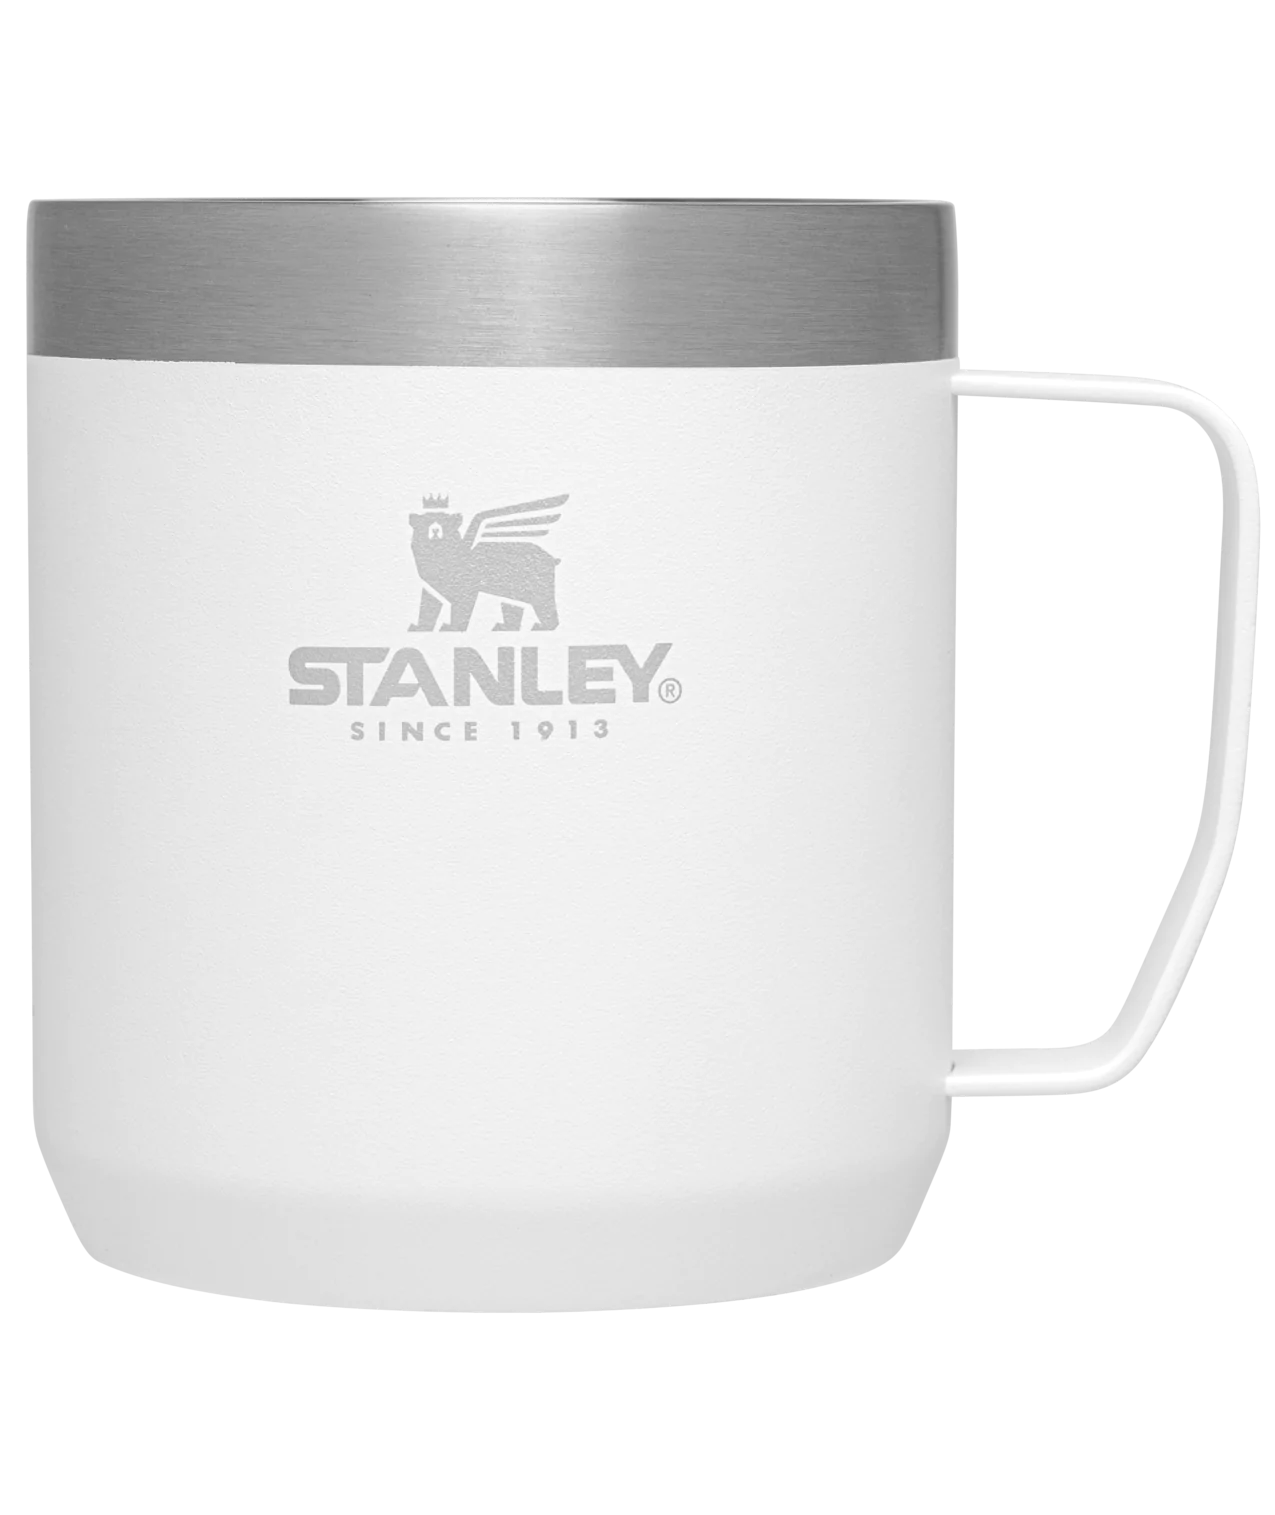 Stanley Legendary Camp Mug 12oz